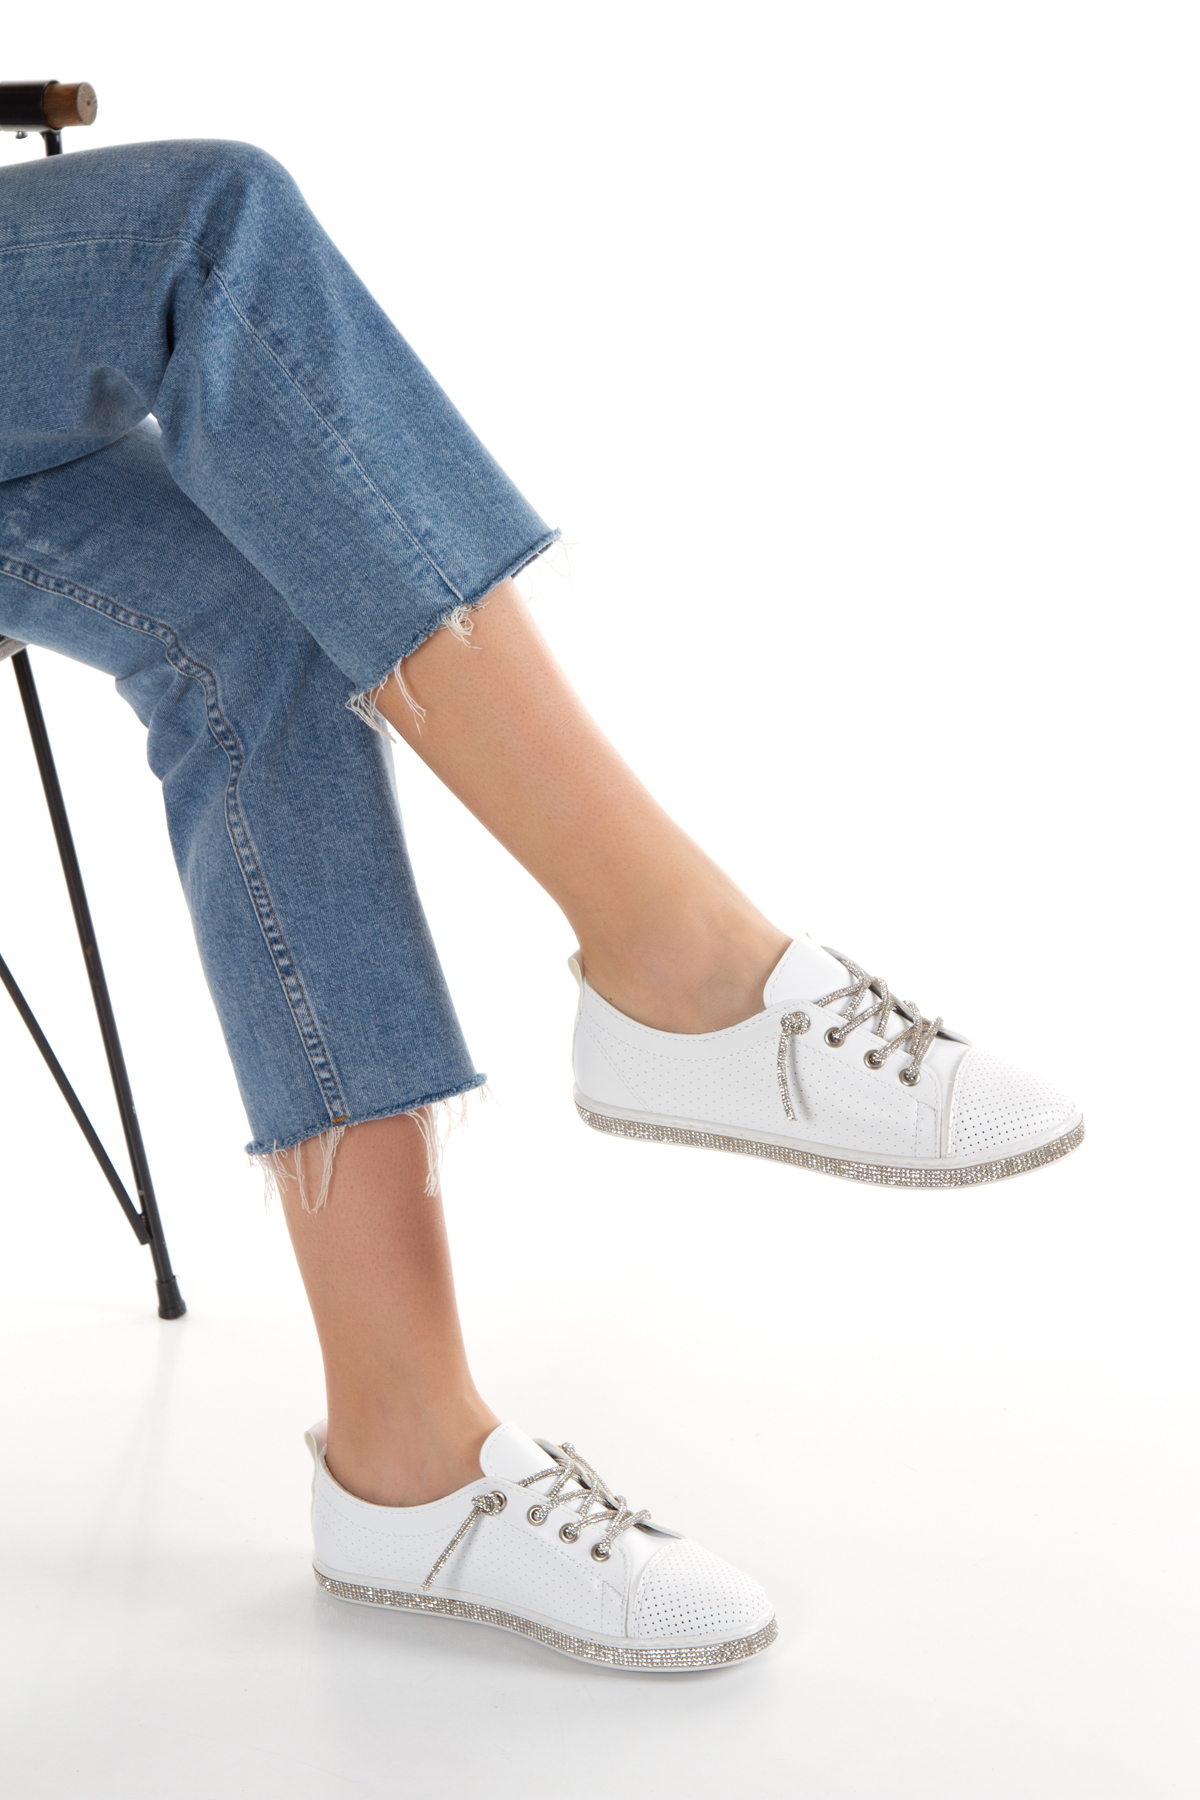 Kadın Beyaz Taşlı Bağcık Şık Spor Ayakkabı